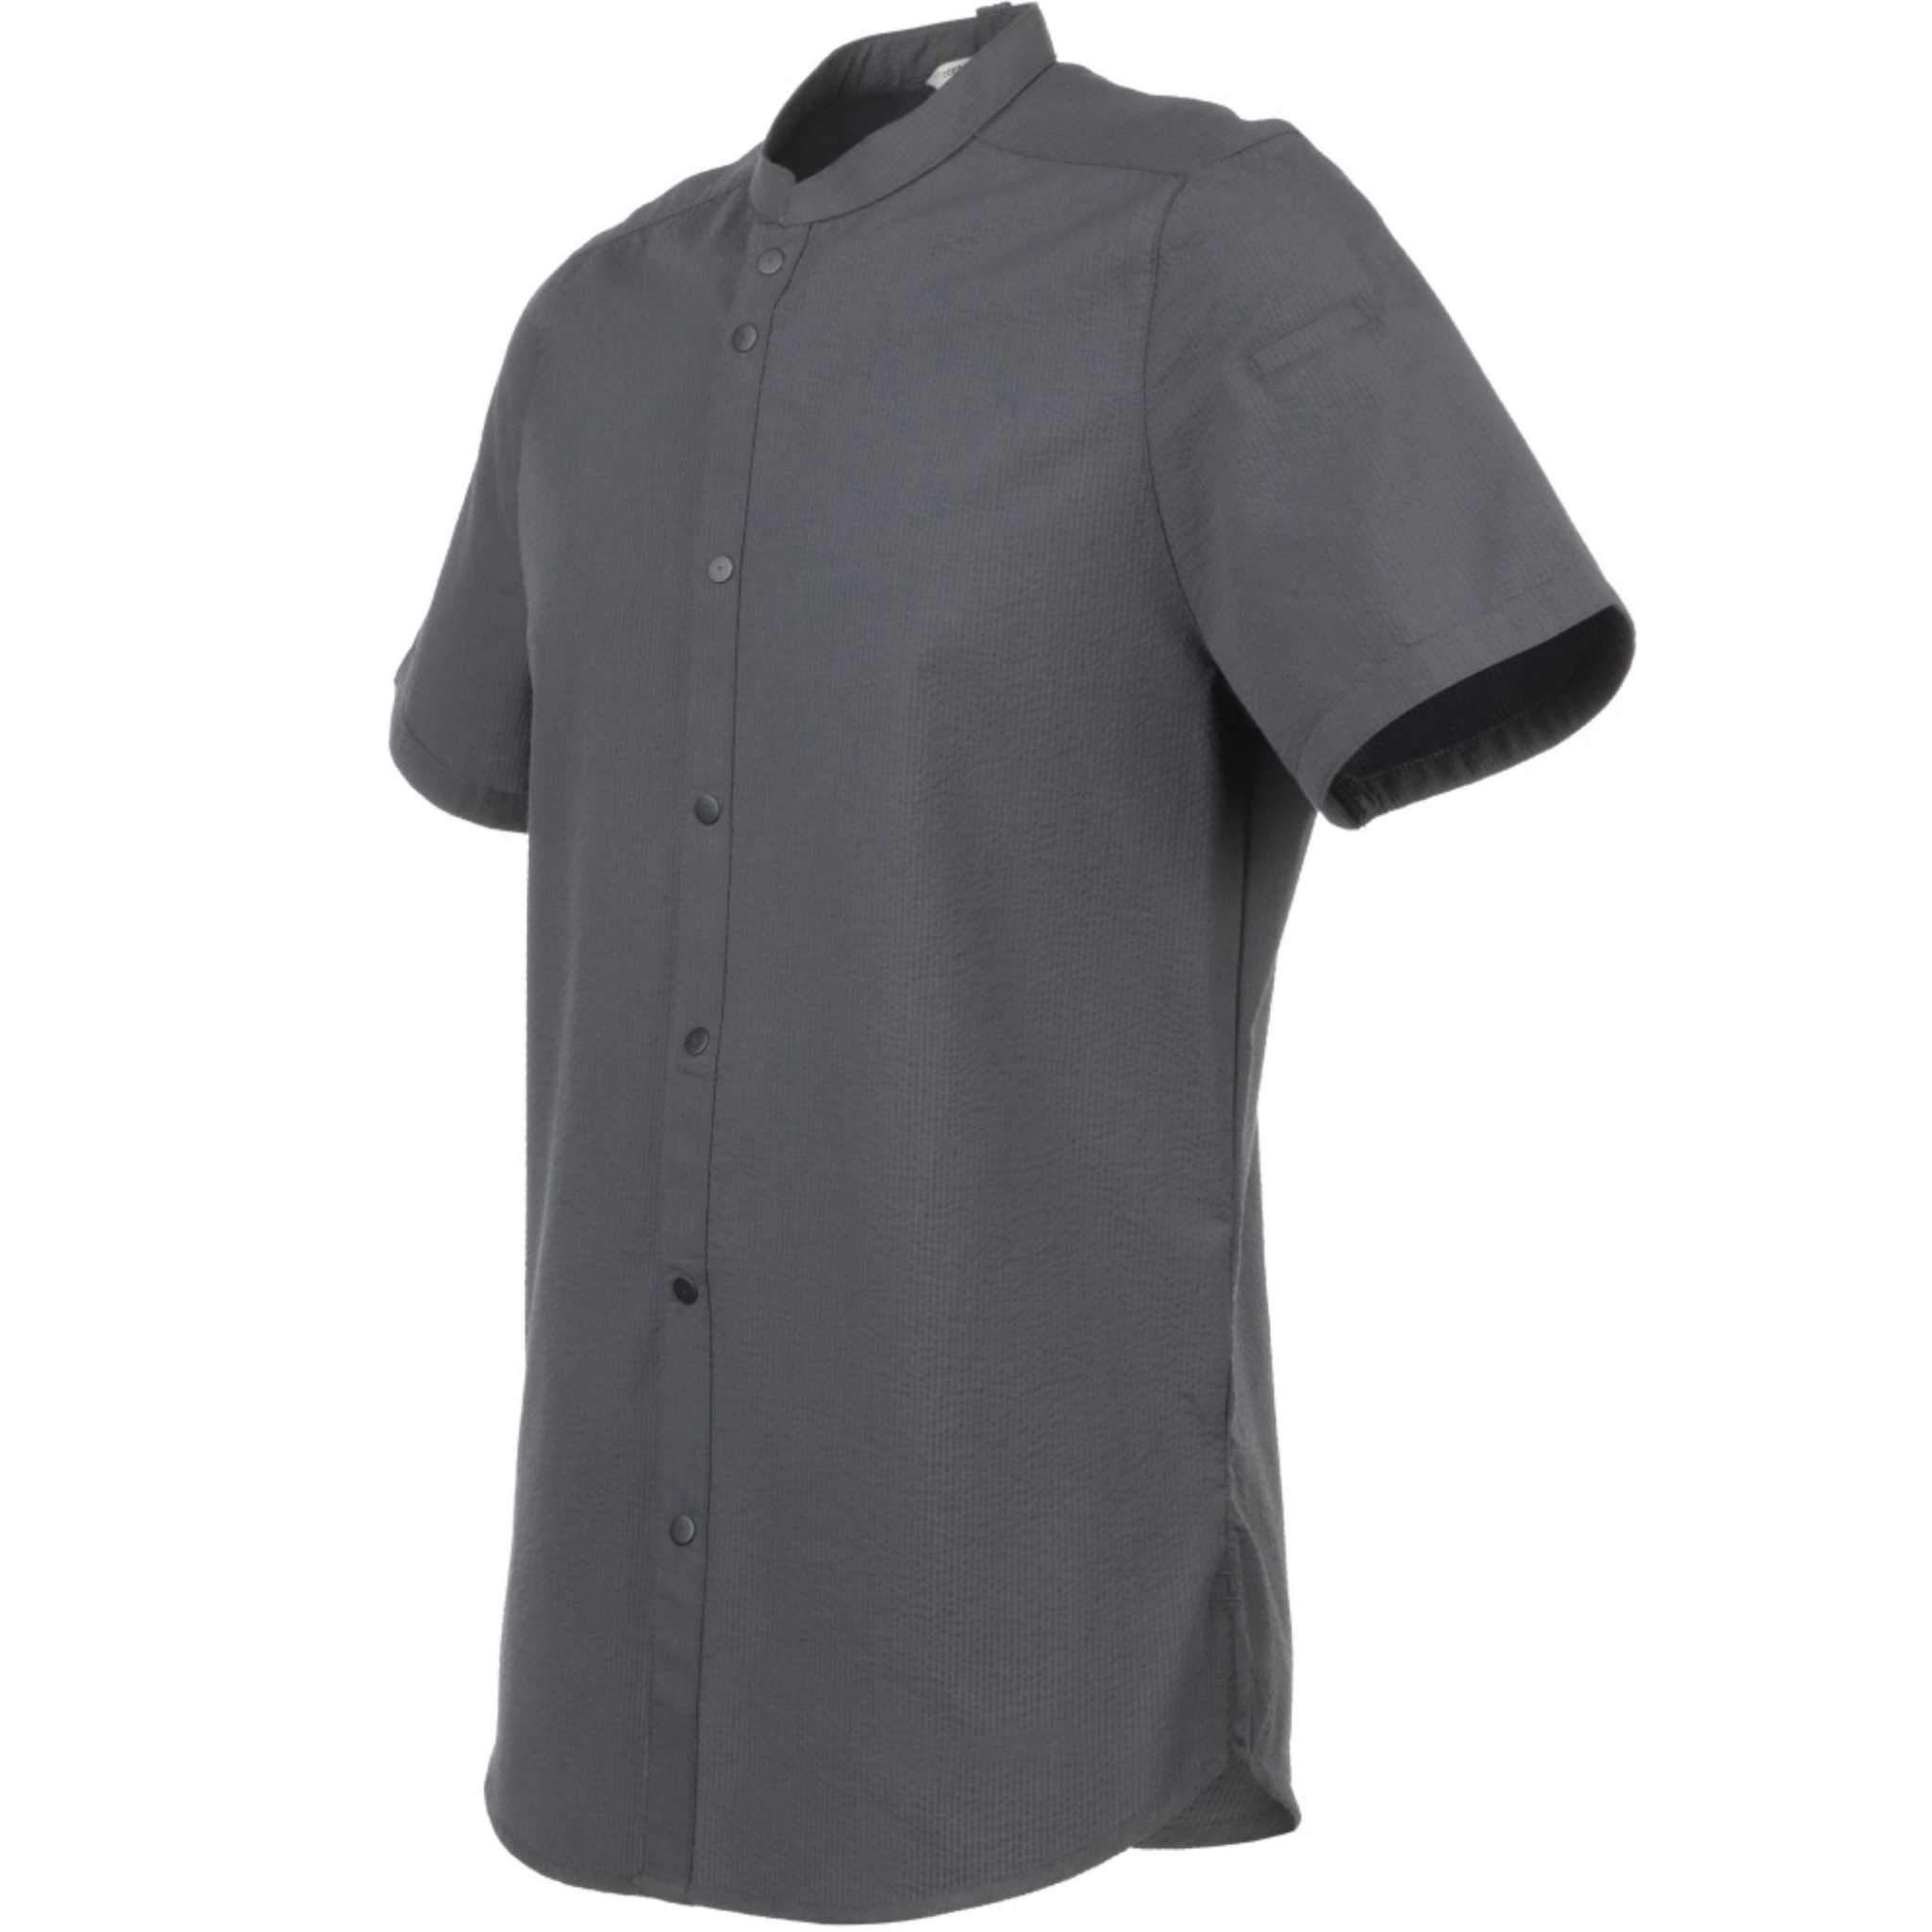 Chef Works (シェフワークス) メンズ シアサッカー チャコール 半袖シャツ